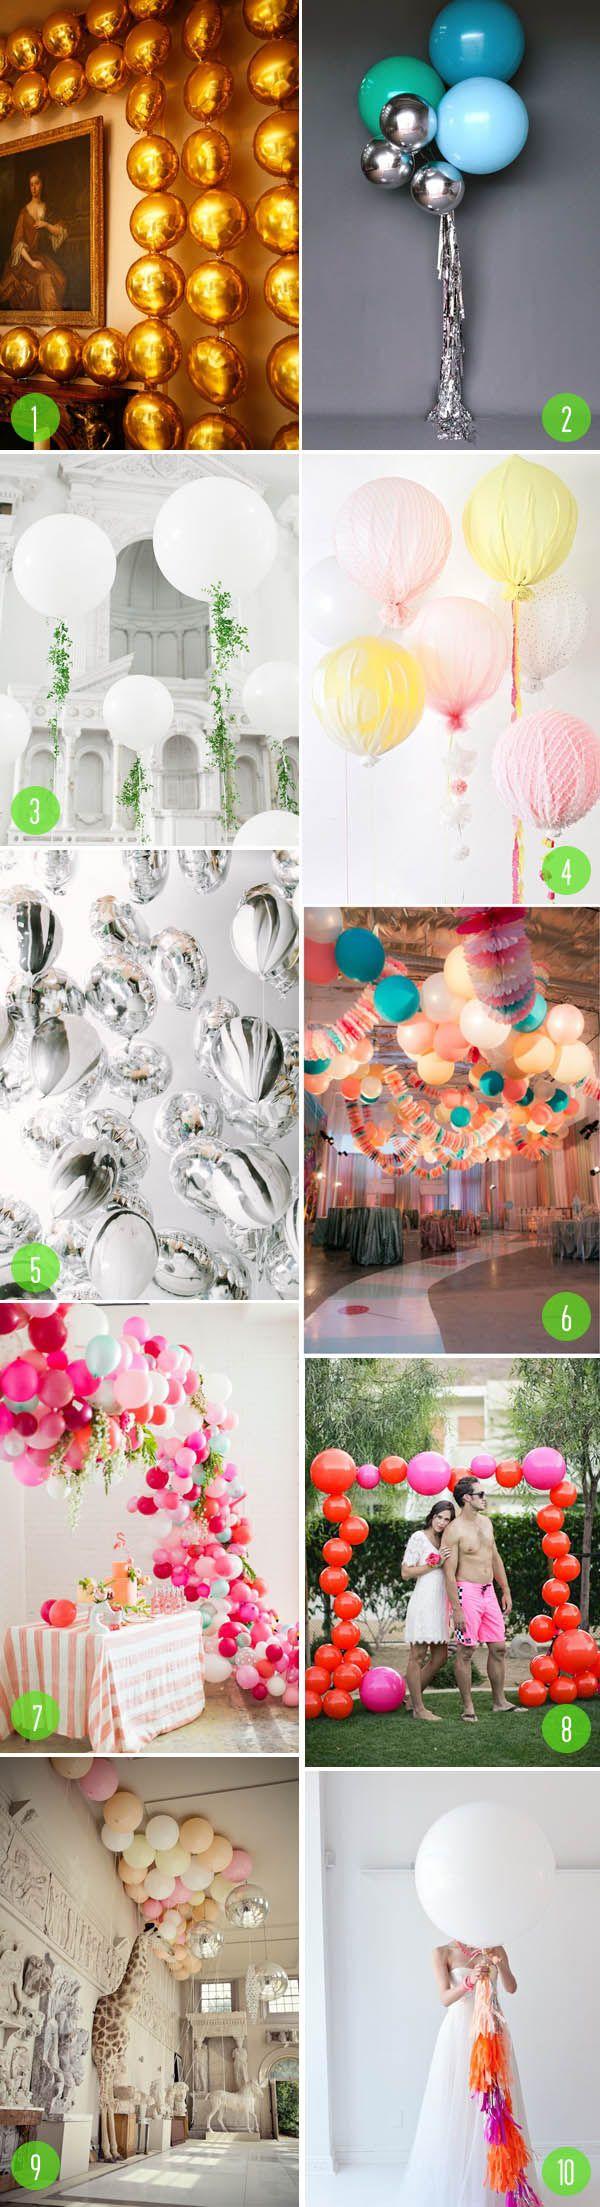 زفاف - Top 10: Balloons